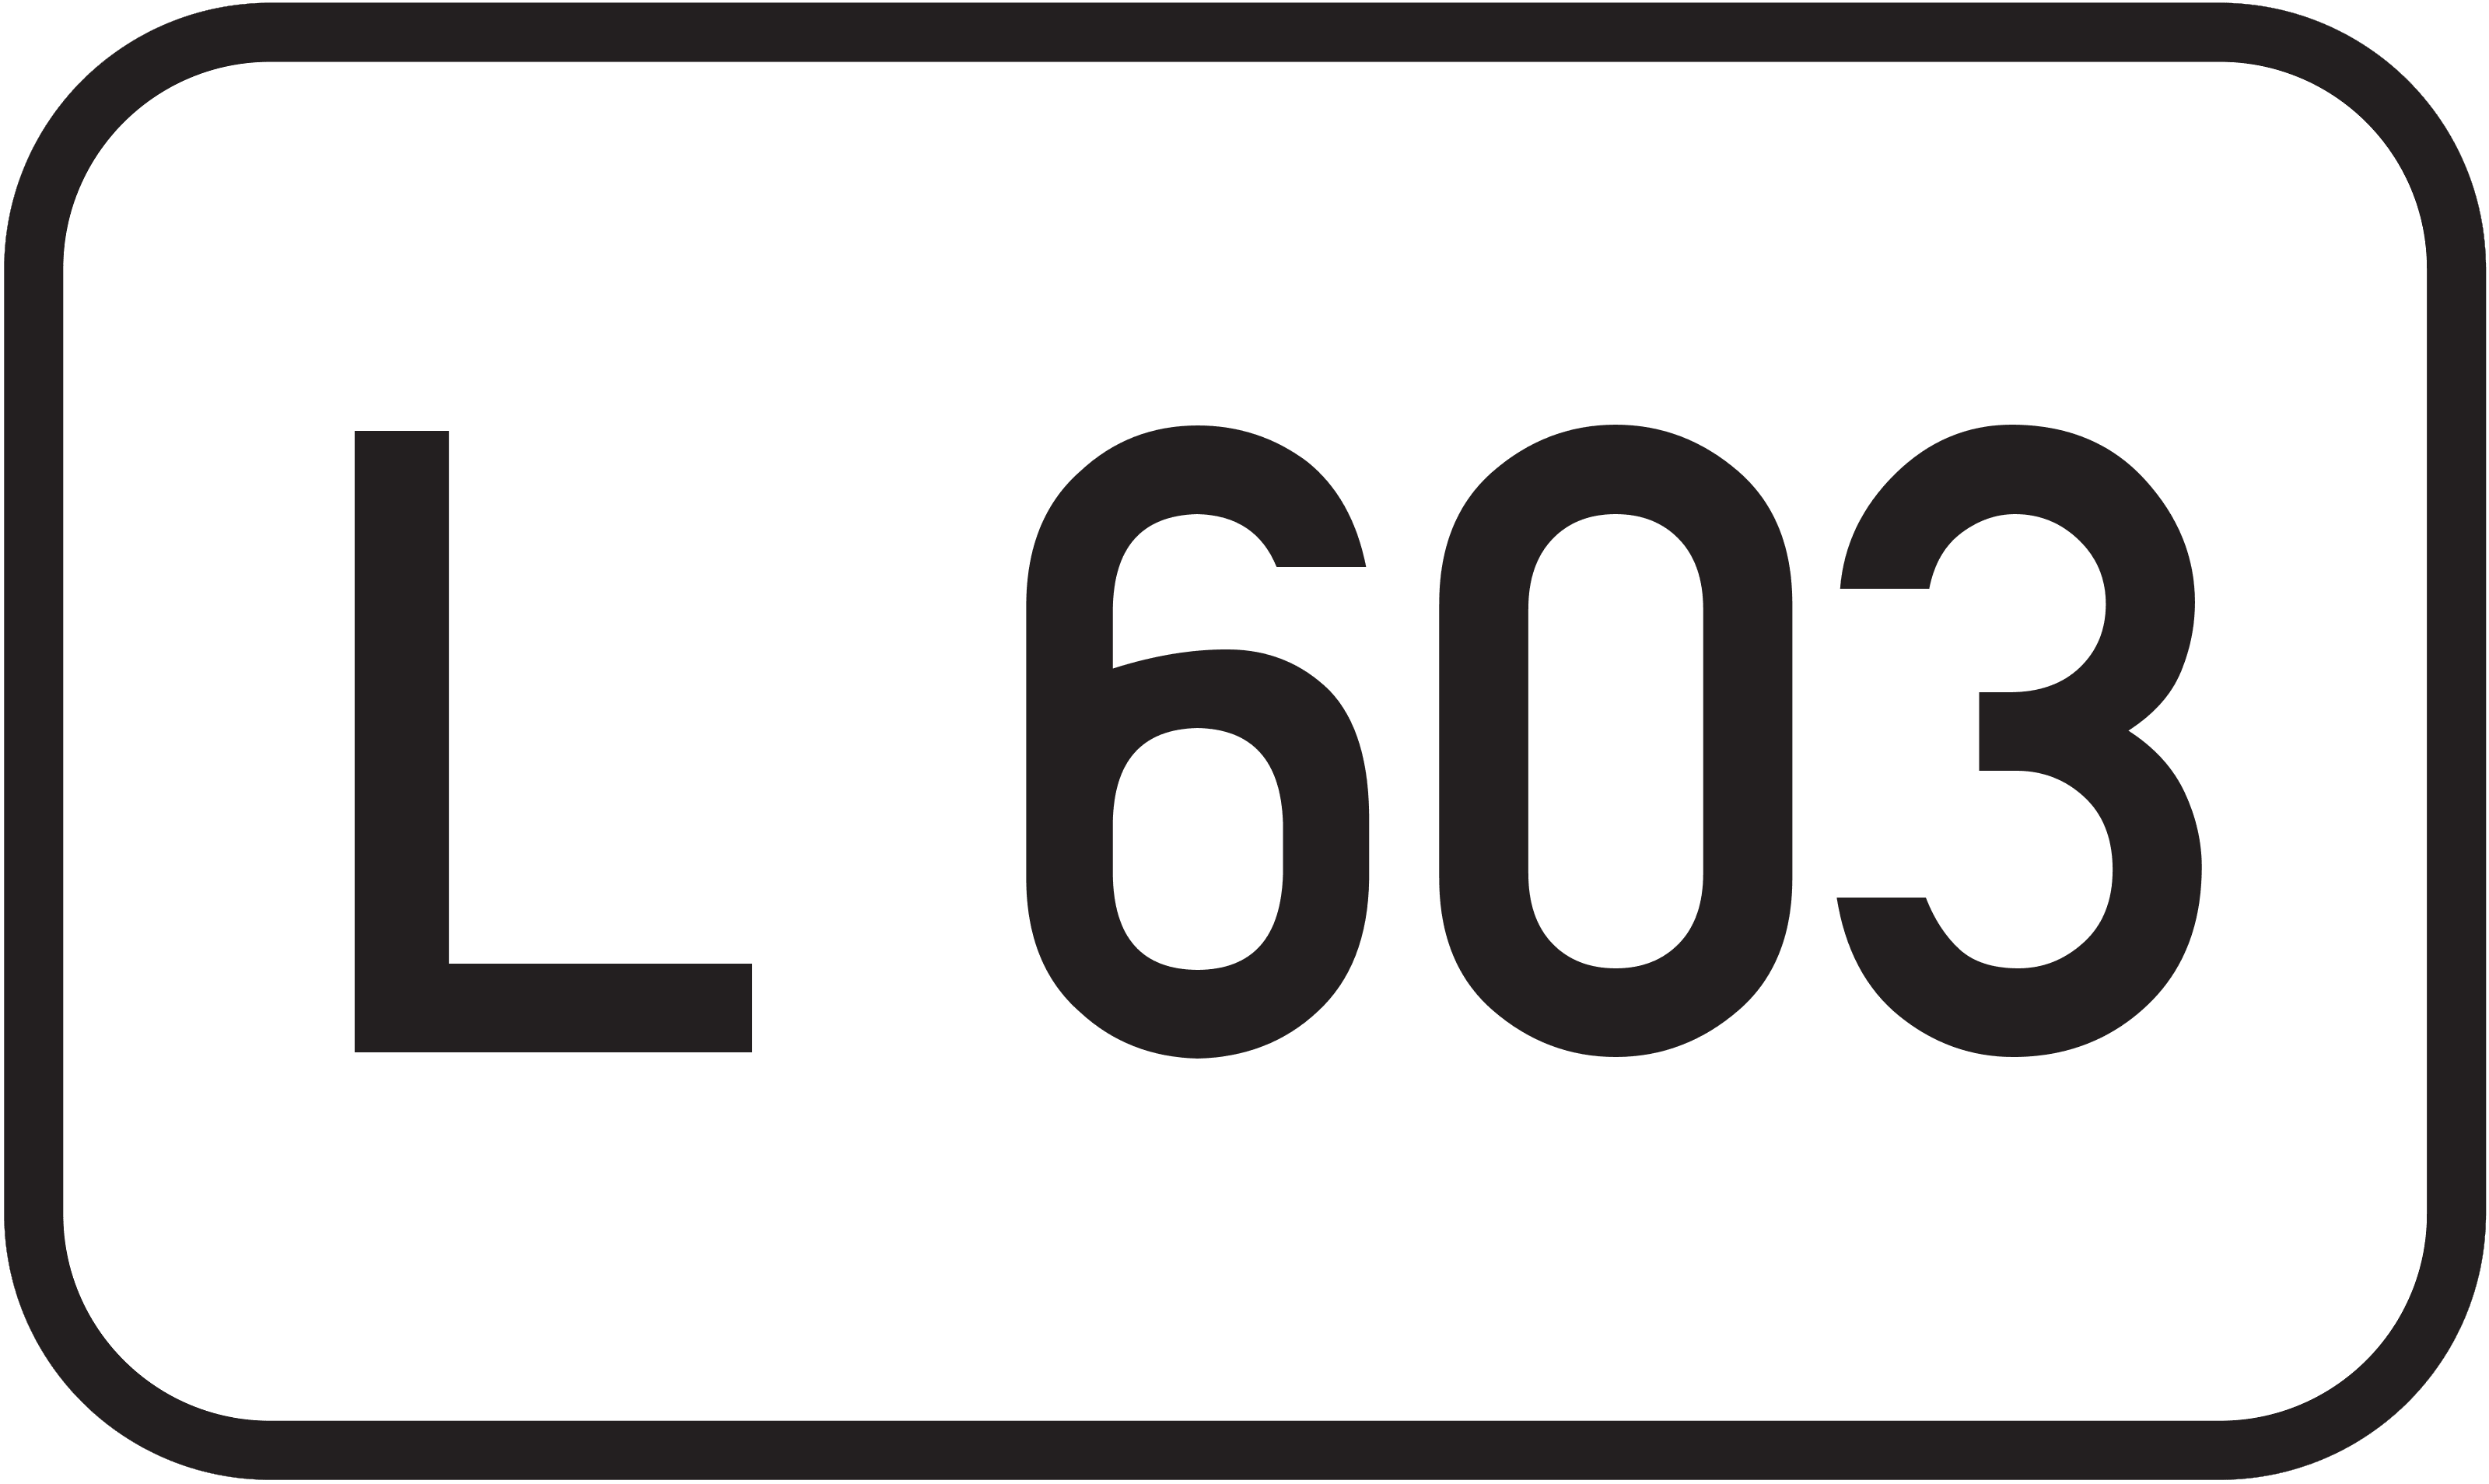 Landesstraße L 603